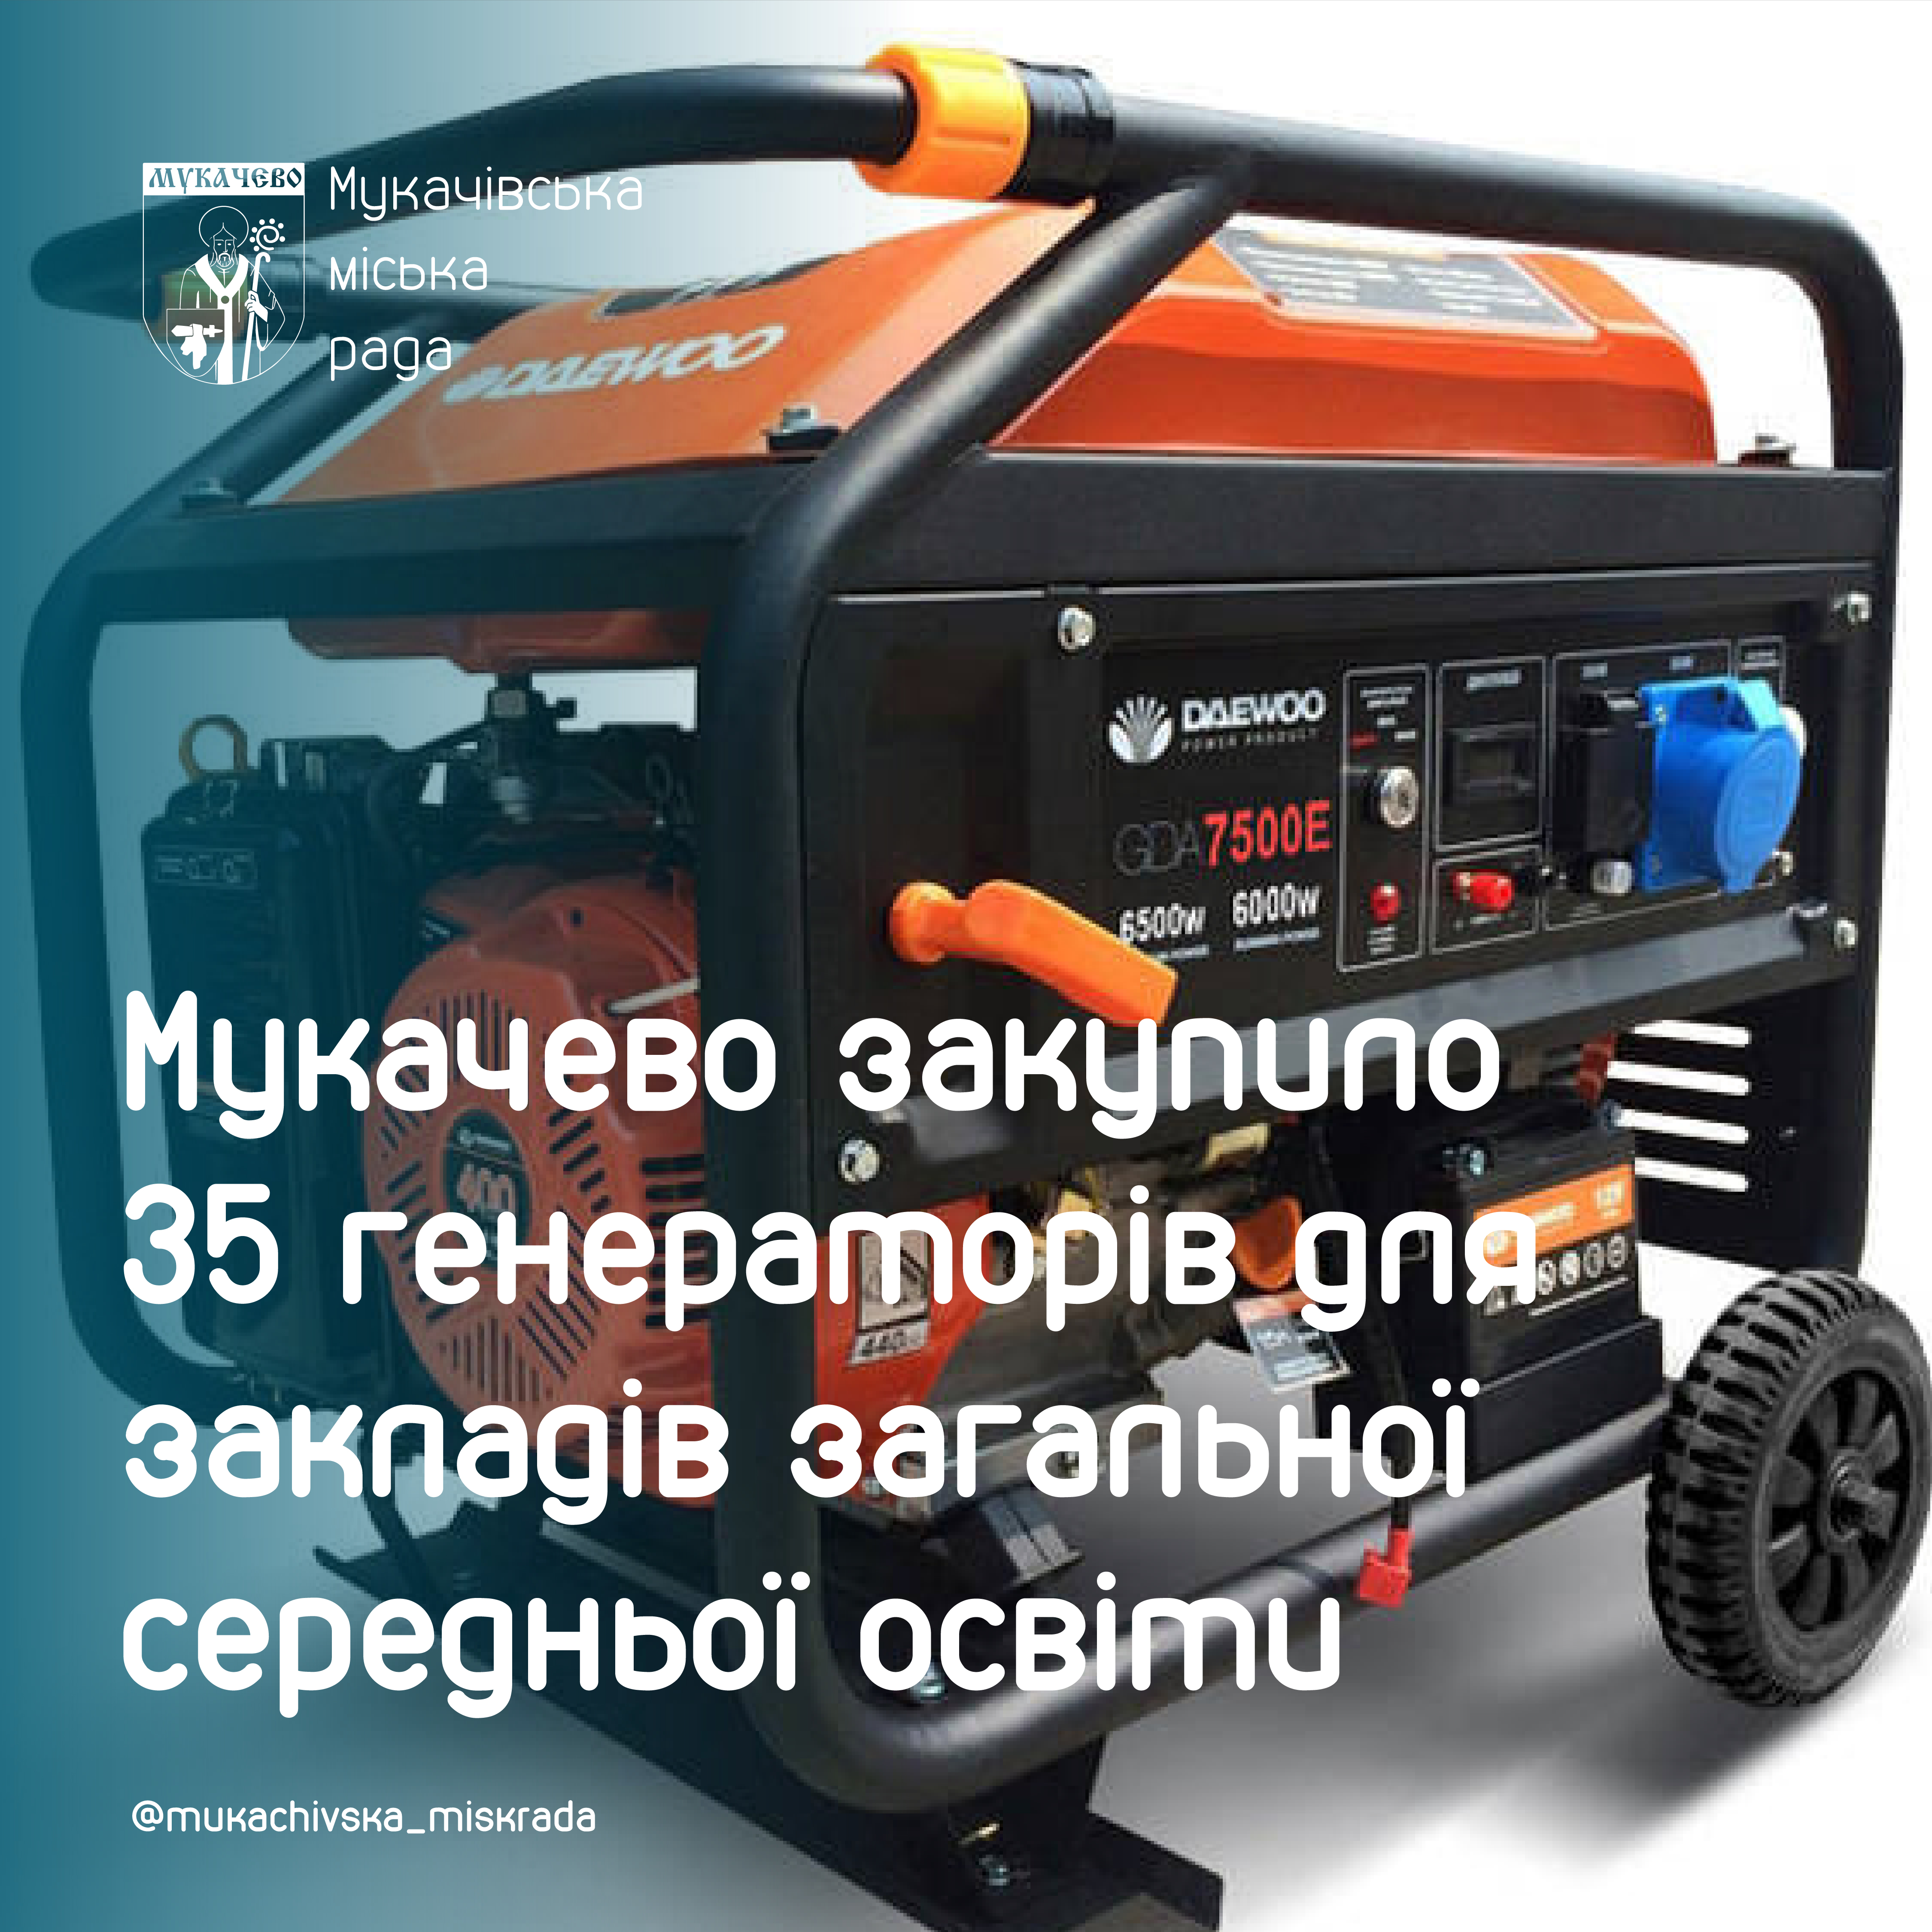 Мукачево закупило 35 генераторів для закладів загальної середньої освіти 